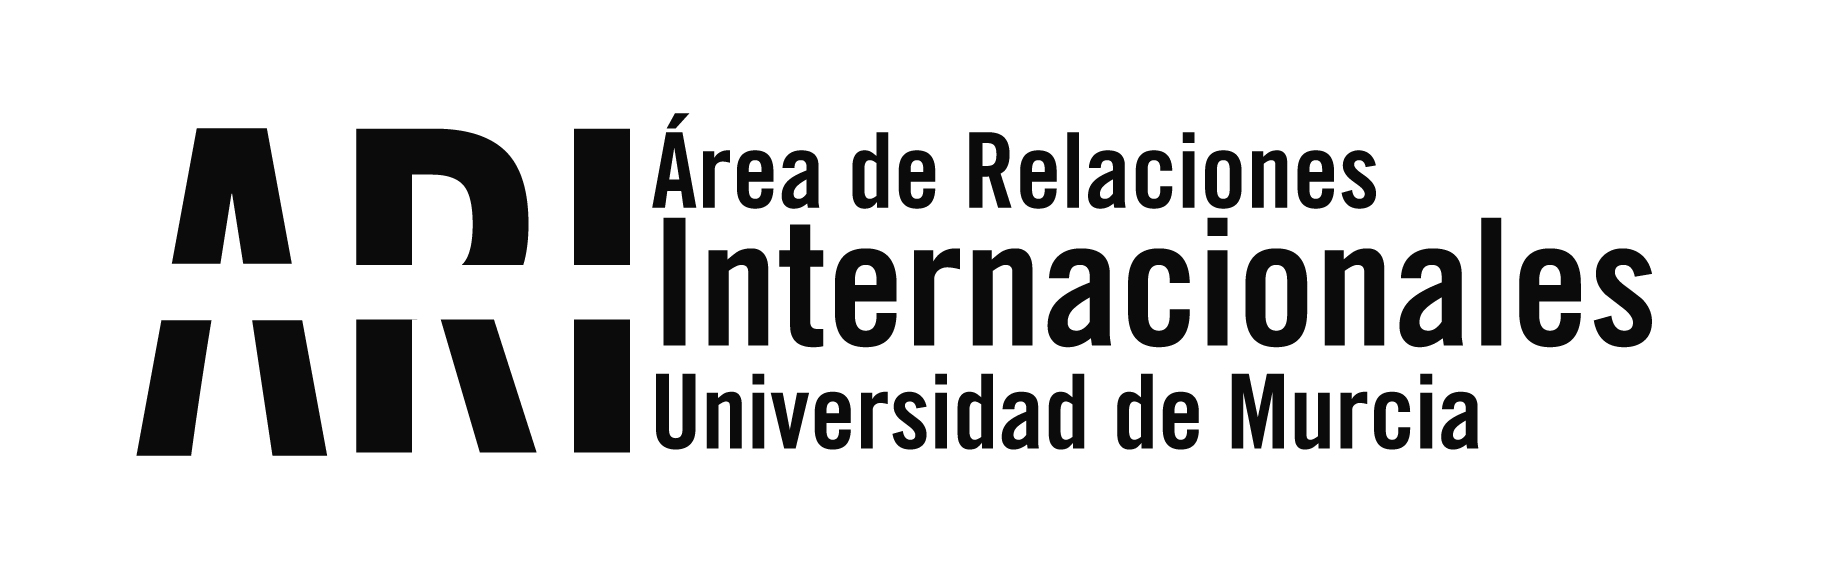 Boletín informativo de Internacionalización 1/2022 - Boletín informativo de Internacionalización 1/2022 - Área de Relaciones Internacionales